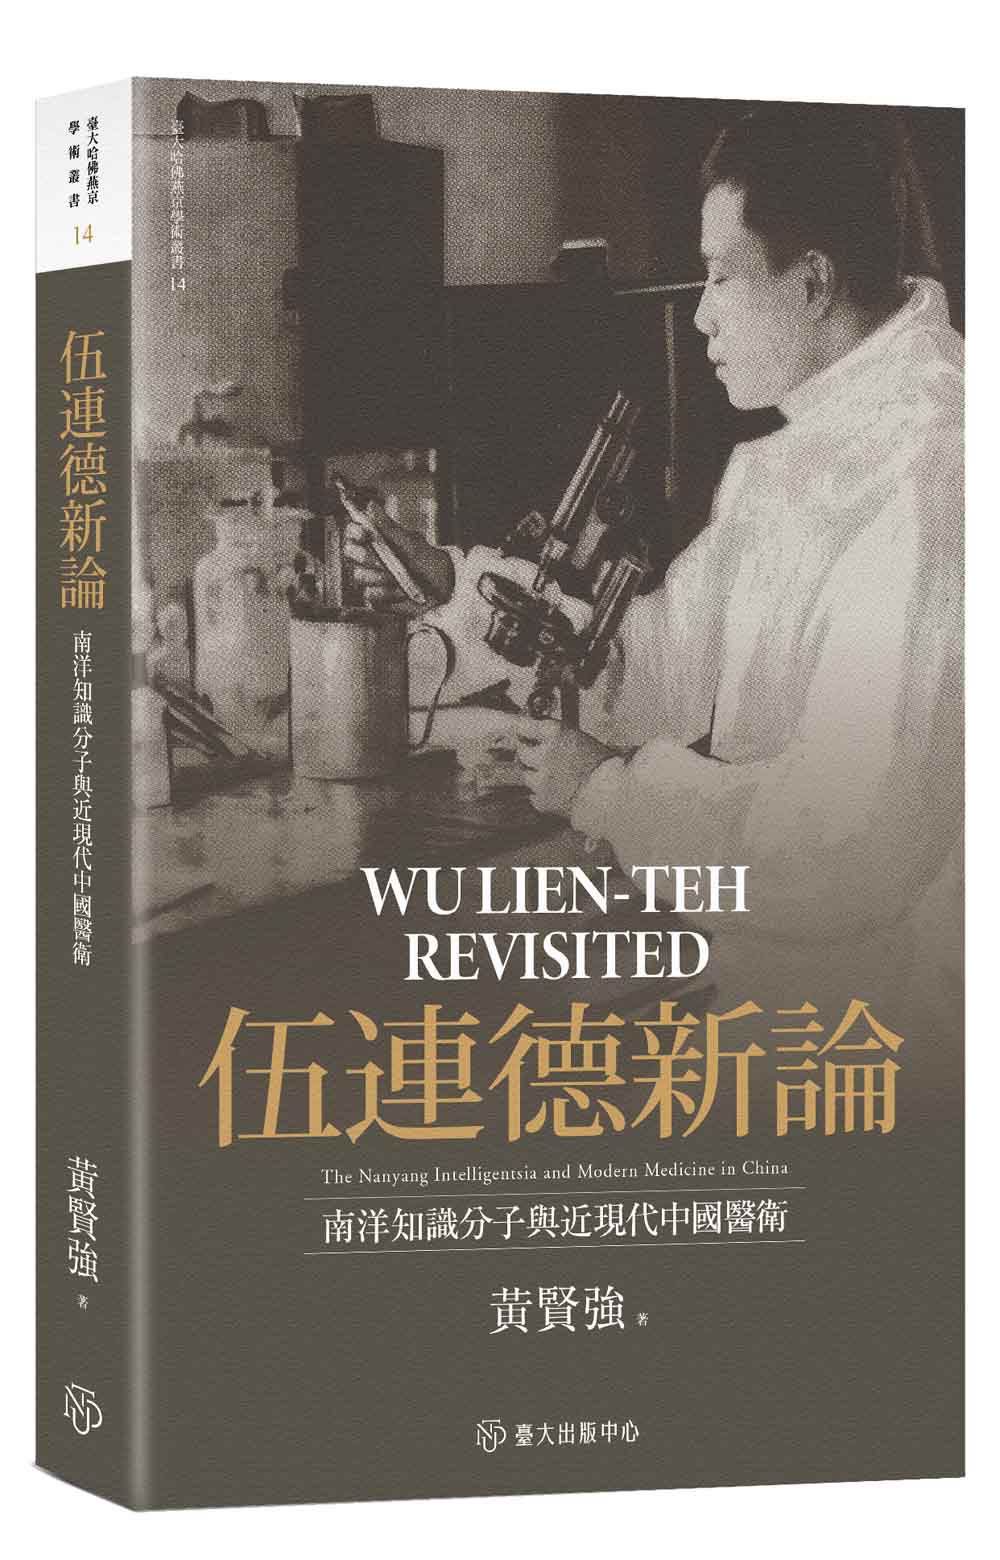 Wu Lien-Teh Revisited: The Nanyang Intelligentsia and Modern Medicine in China